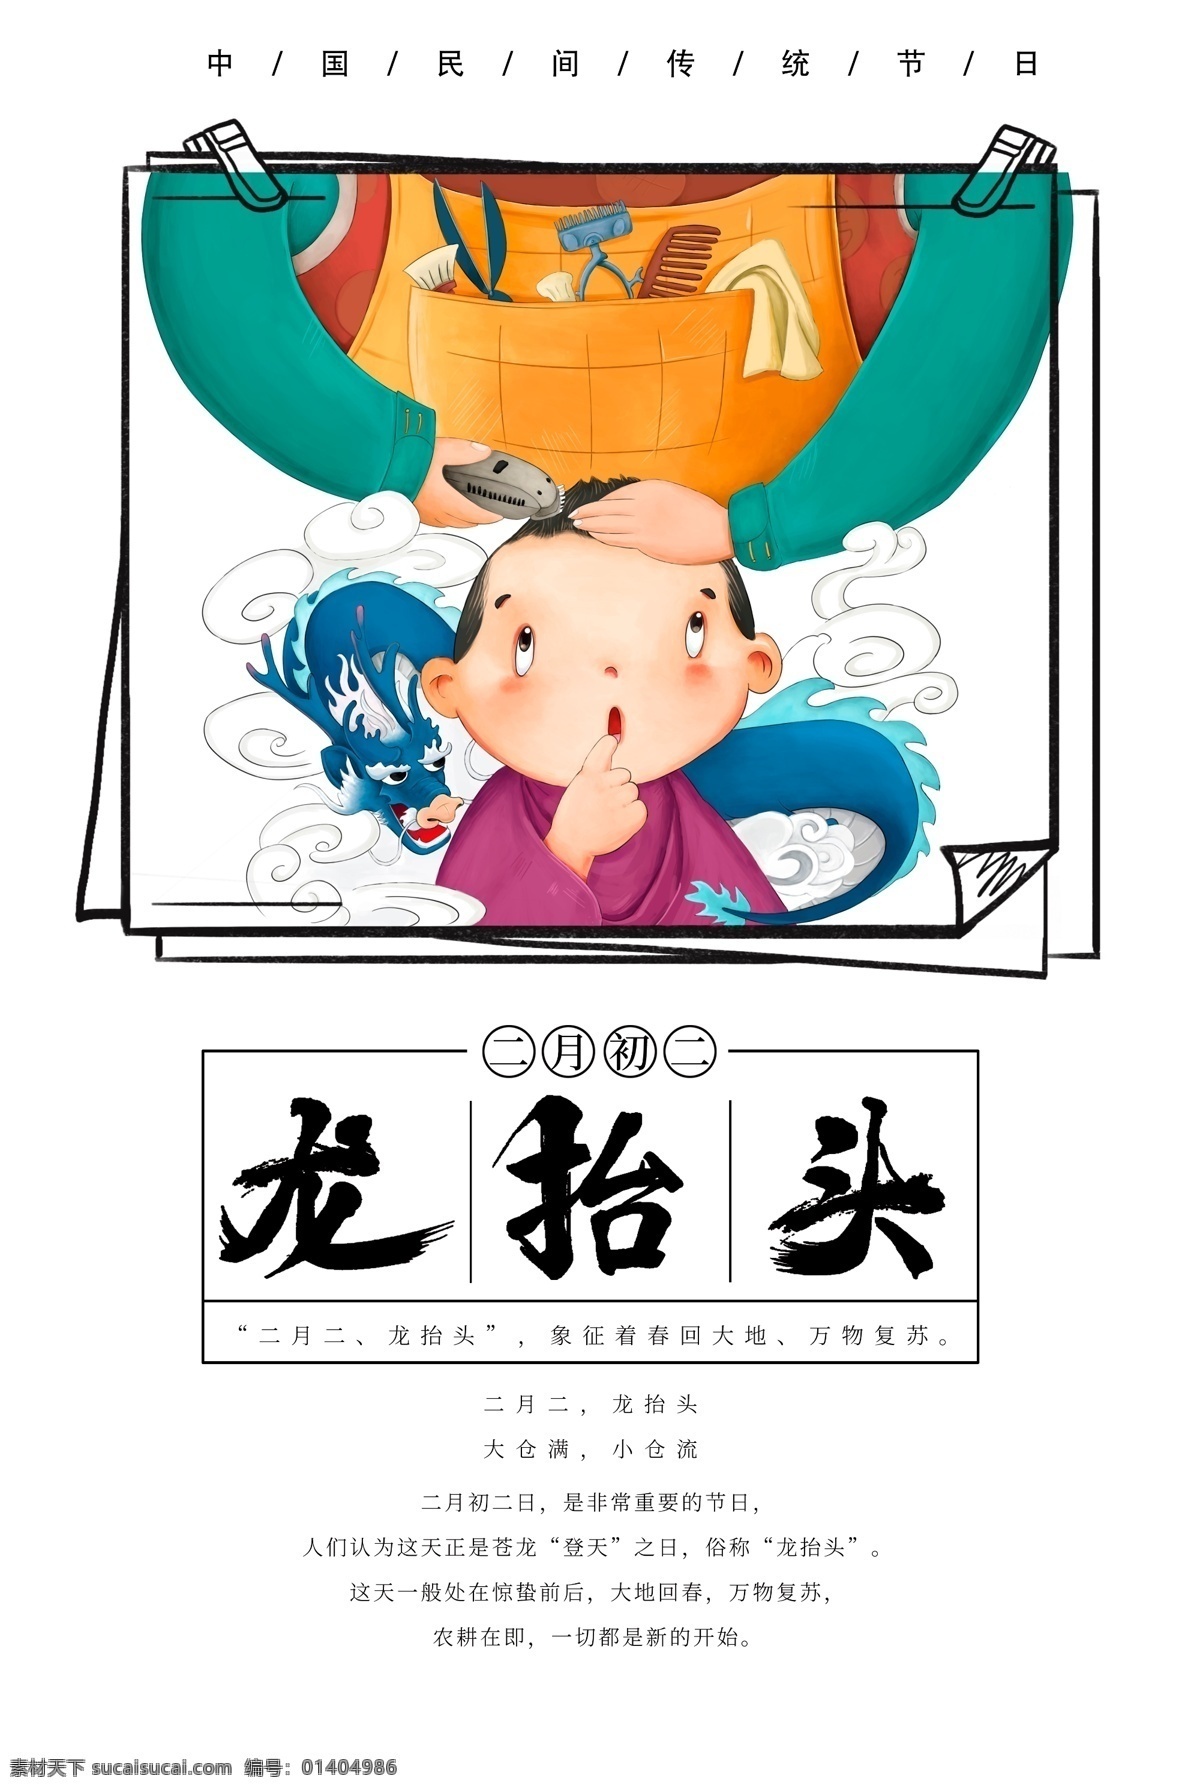 二月 初二 龙 抬头 海报 二月初二 龙抬头 卡通 剪头发 儿童 节日 传统节日 传统习俗 新年 2019 春年 红色